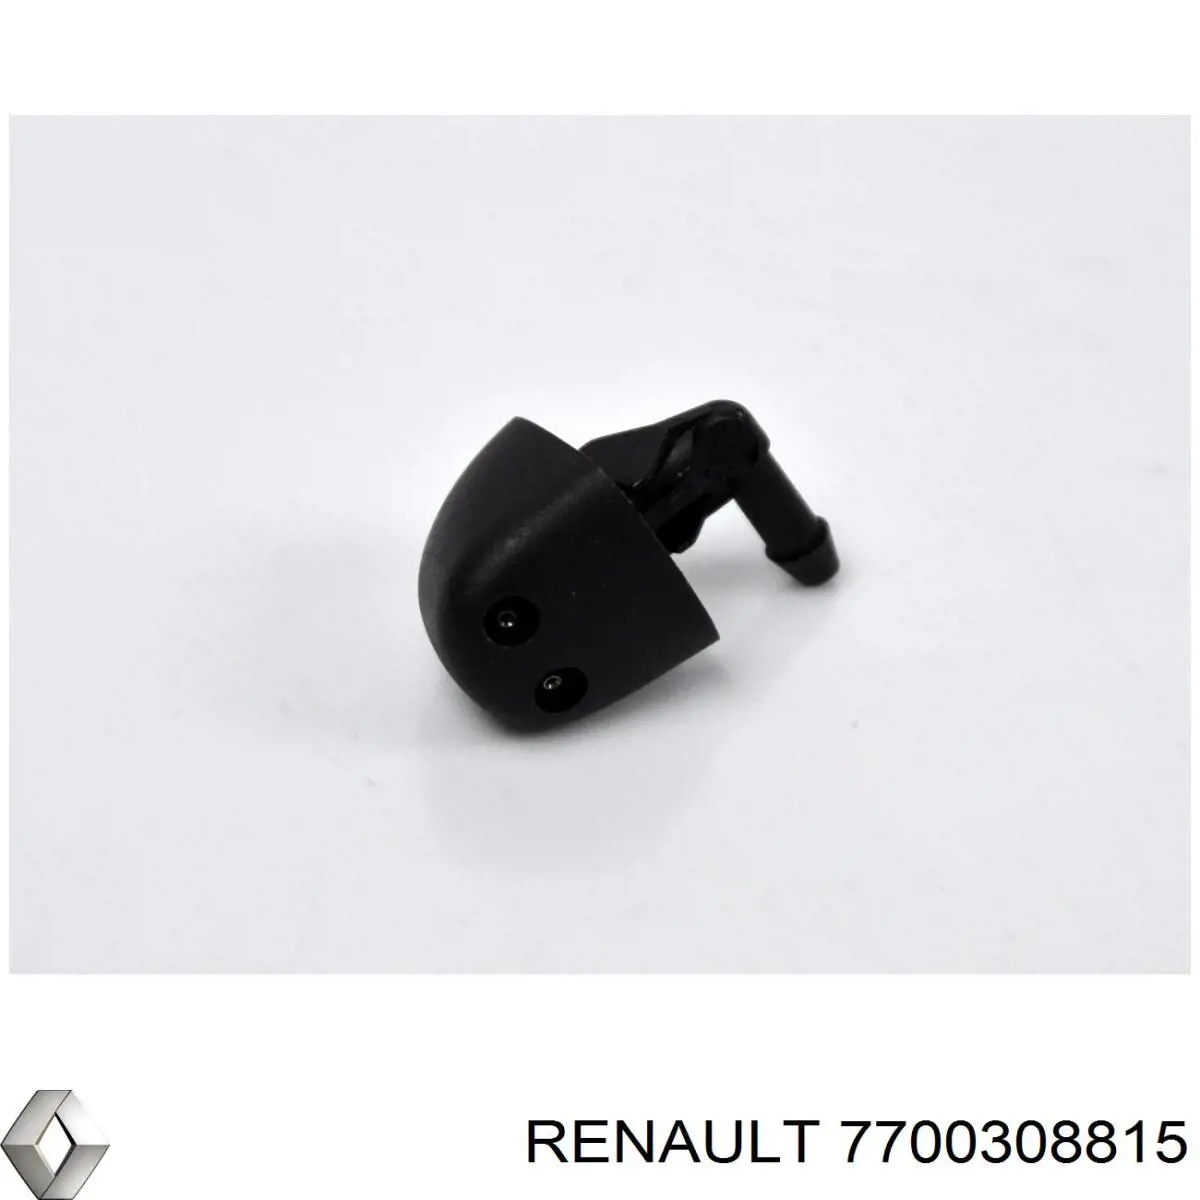 7700308815 Renault (RVI) injetor de fluido para lavador de pára-brisas